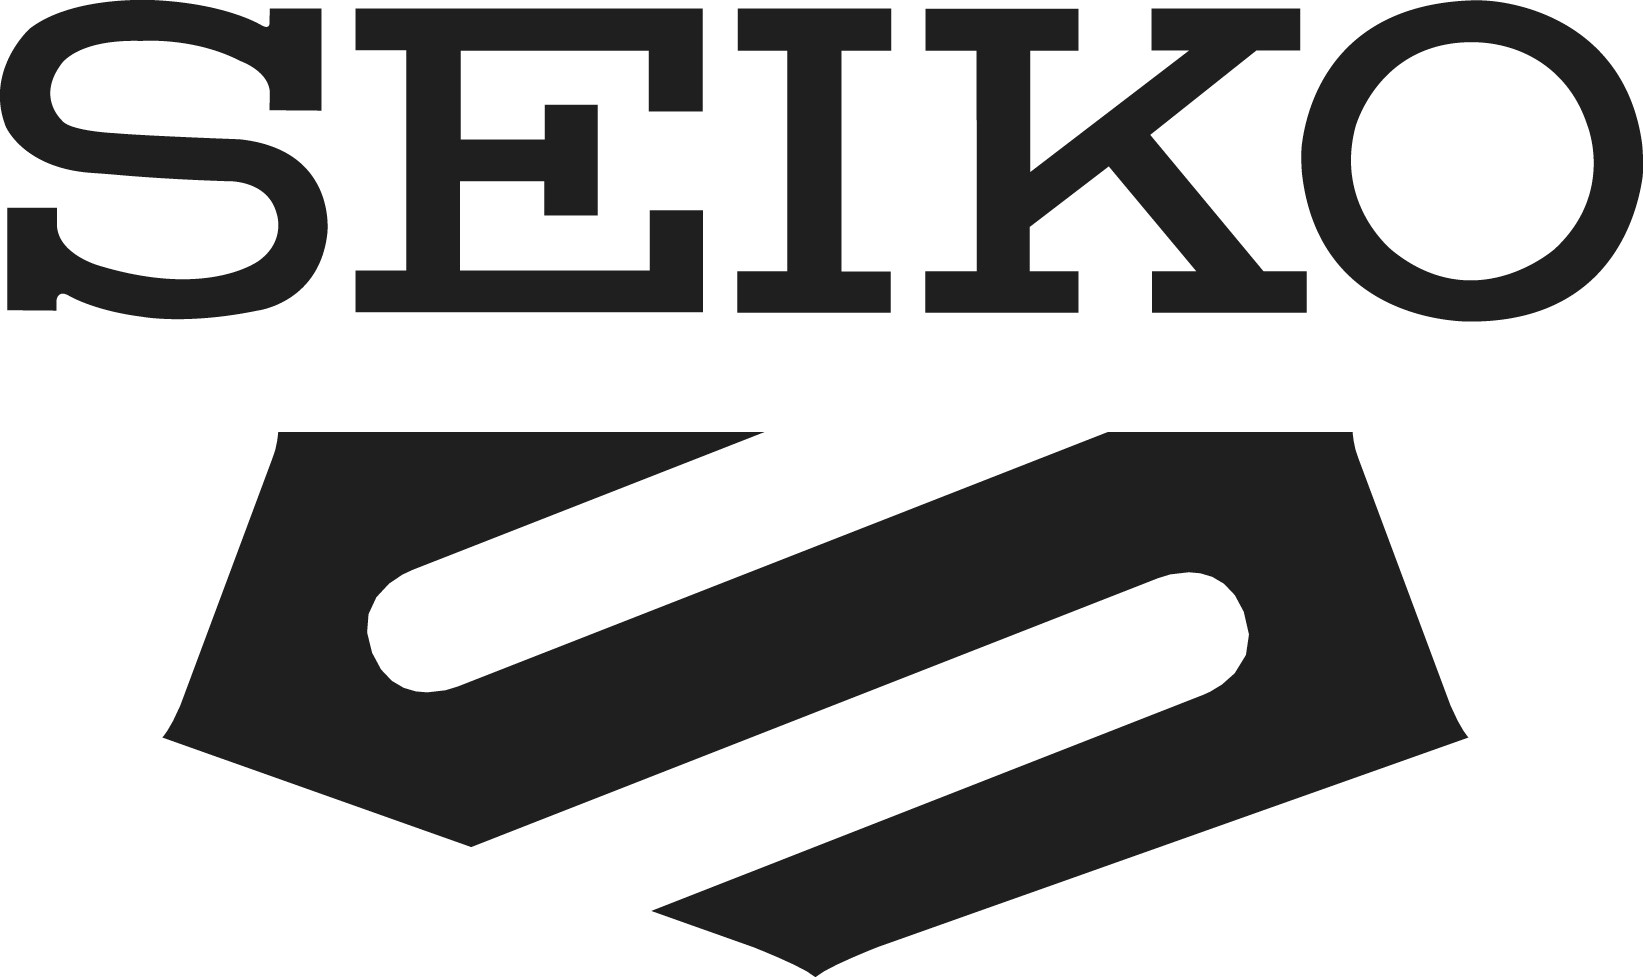 Logo Seiko